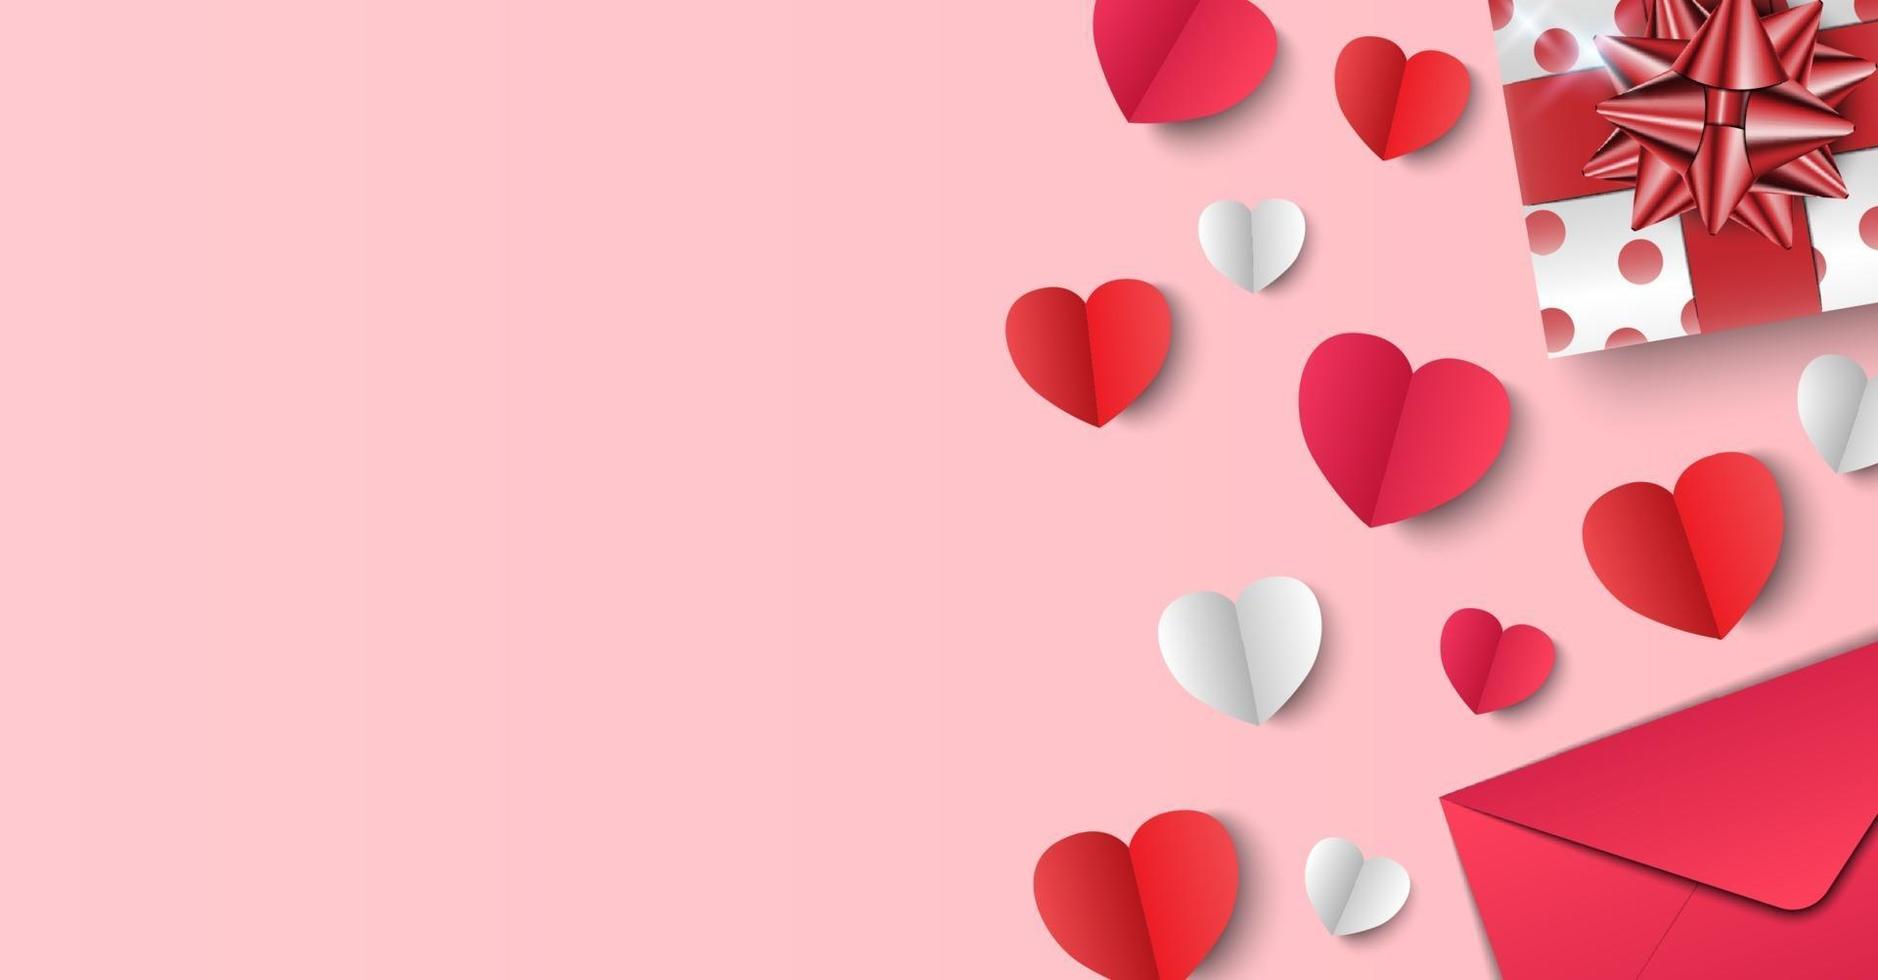 Hình nền Valentine với món quà, phong bì và trái tim giấy hồng sẽ khiến bạn đắm chìm trong không khí của ngày Lễ Tình nhân. Hãy dành một chút thời gian để trang trí màn hình của bạn và cảm nhận cảm giác này.